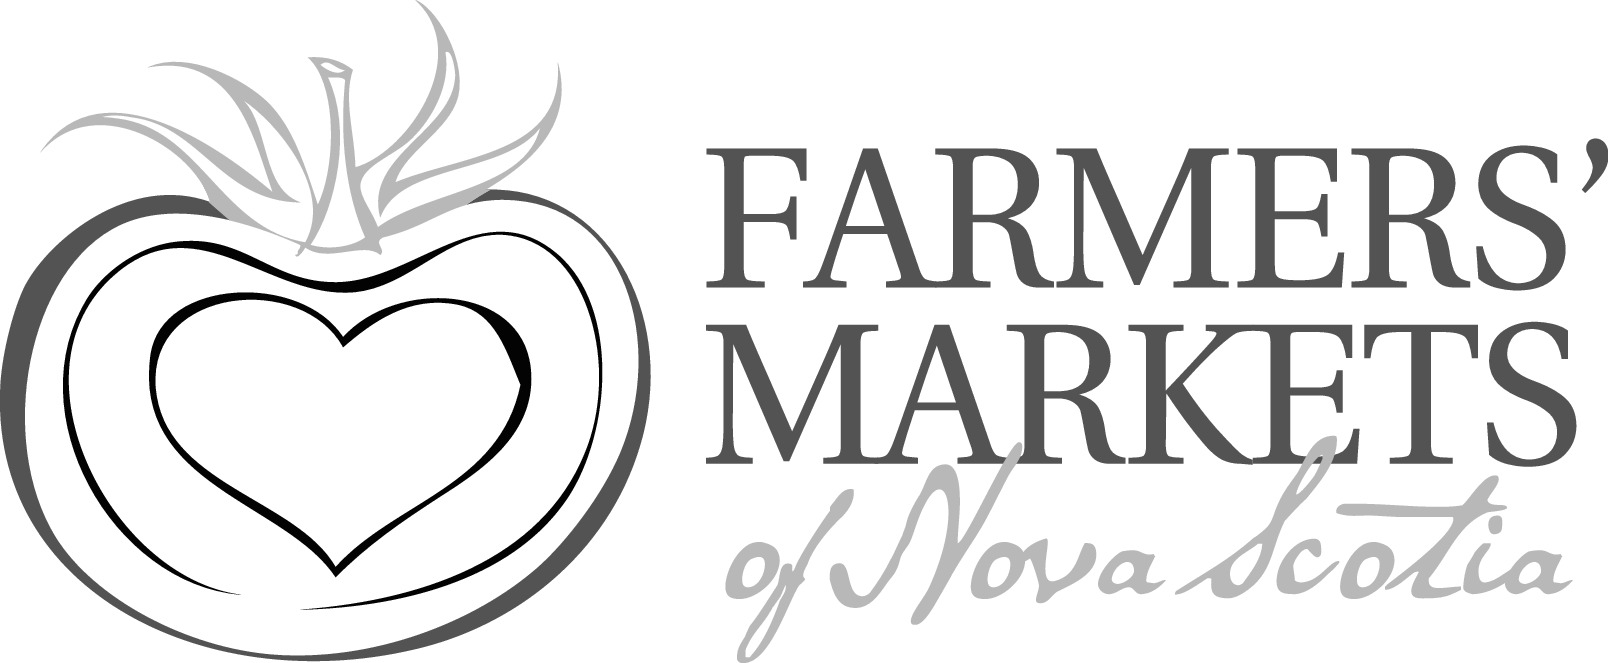 Farmers' Markets of Nova Scotia